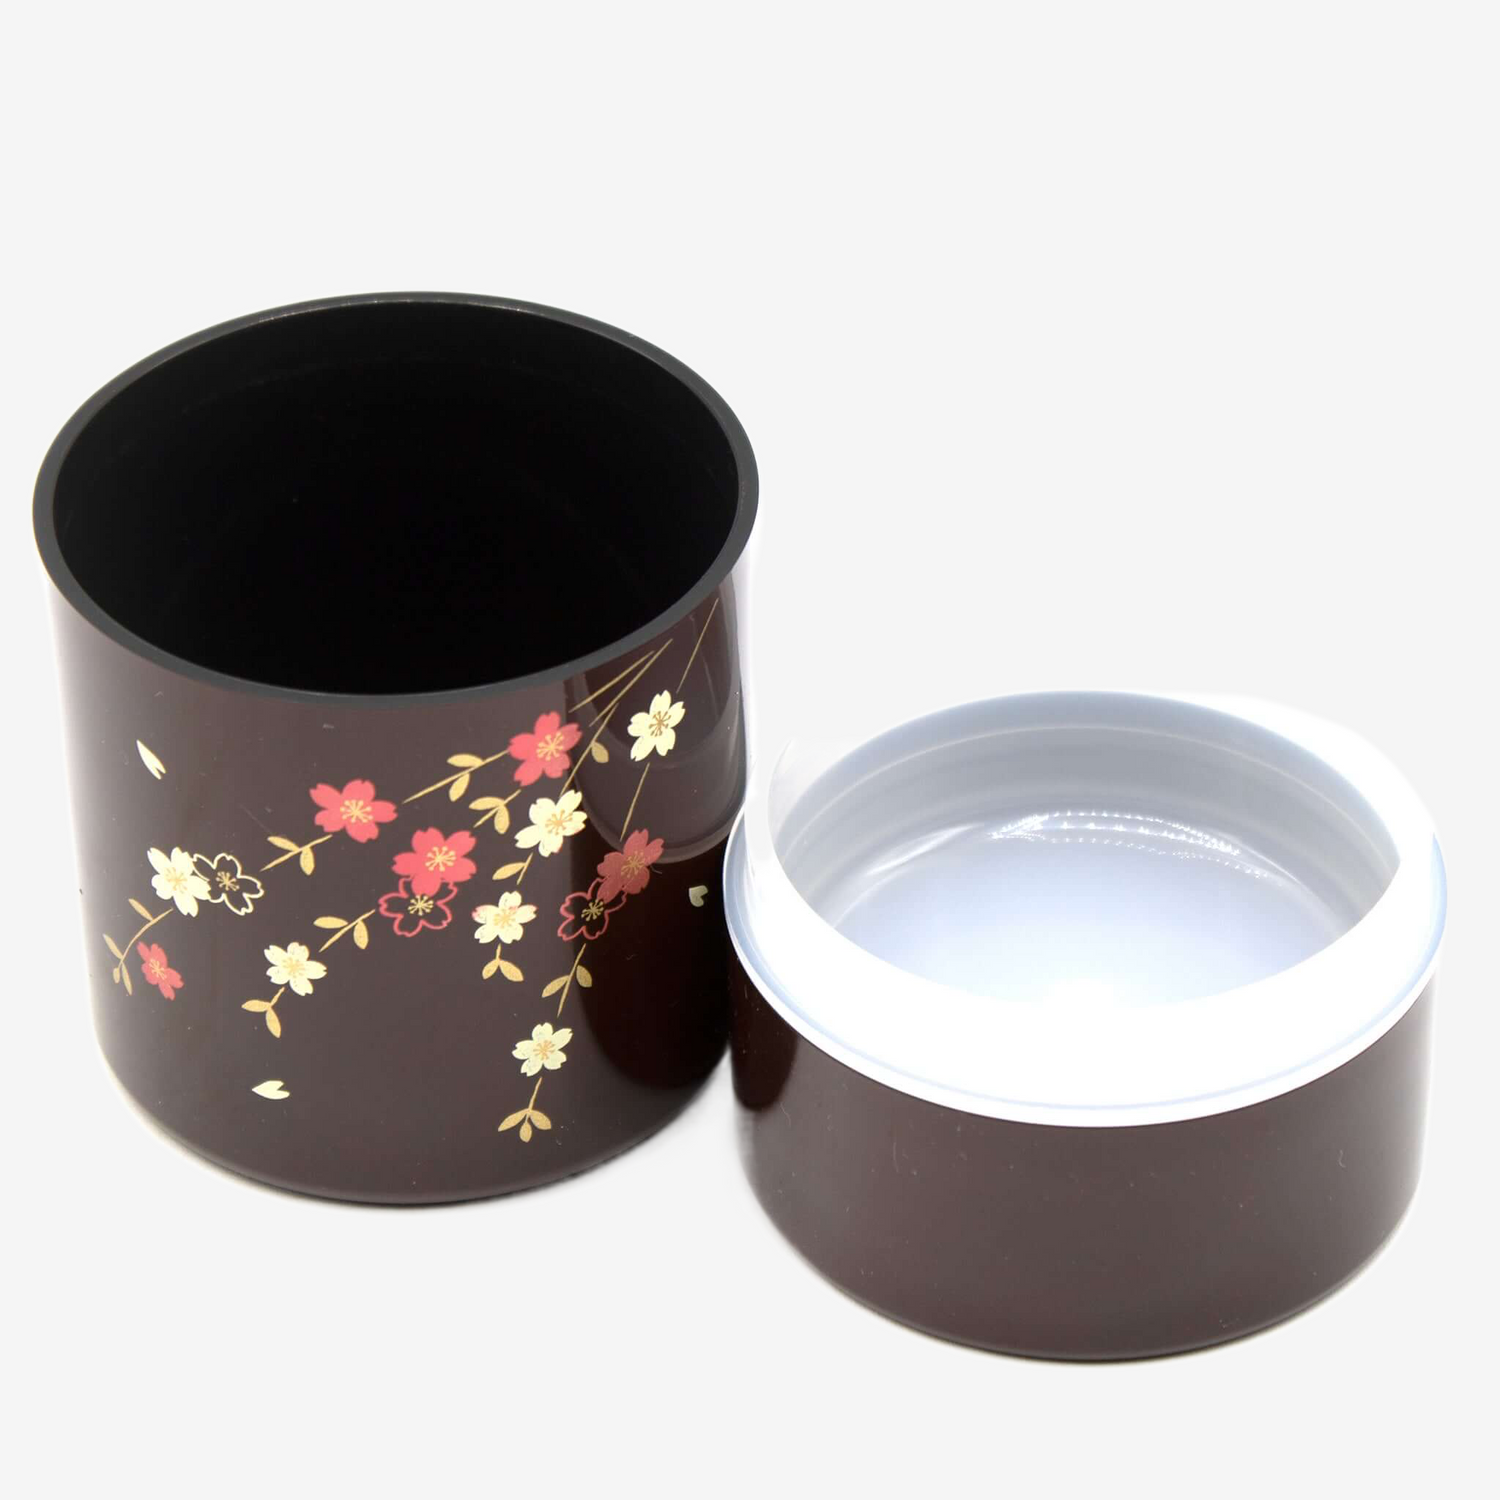 Tame Hana Red Lacquered Resin Tea Canister - Japanese Chazutsu Teaware Inoue Tea